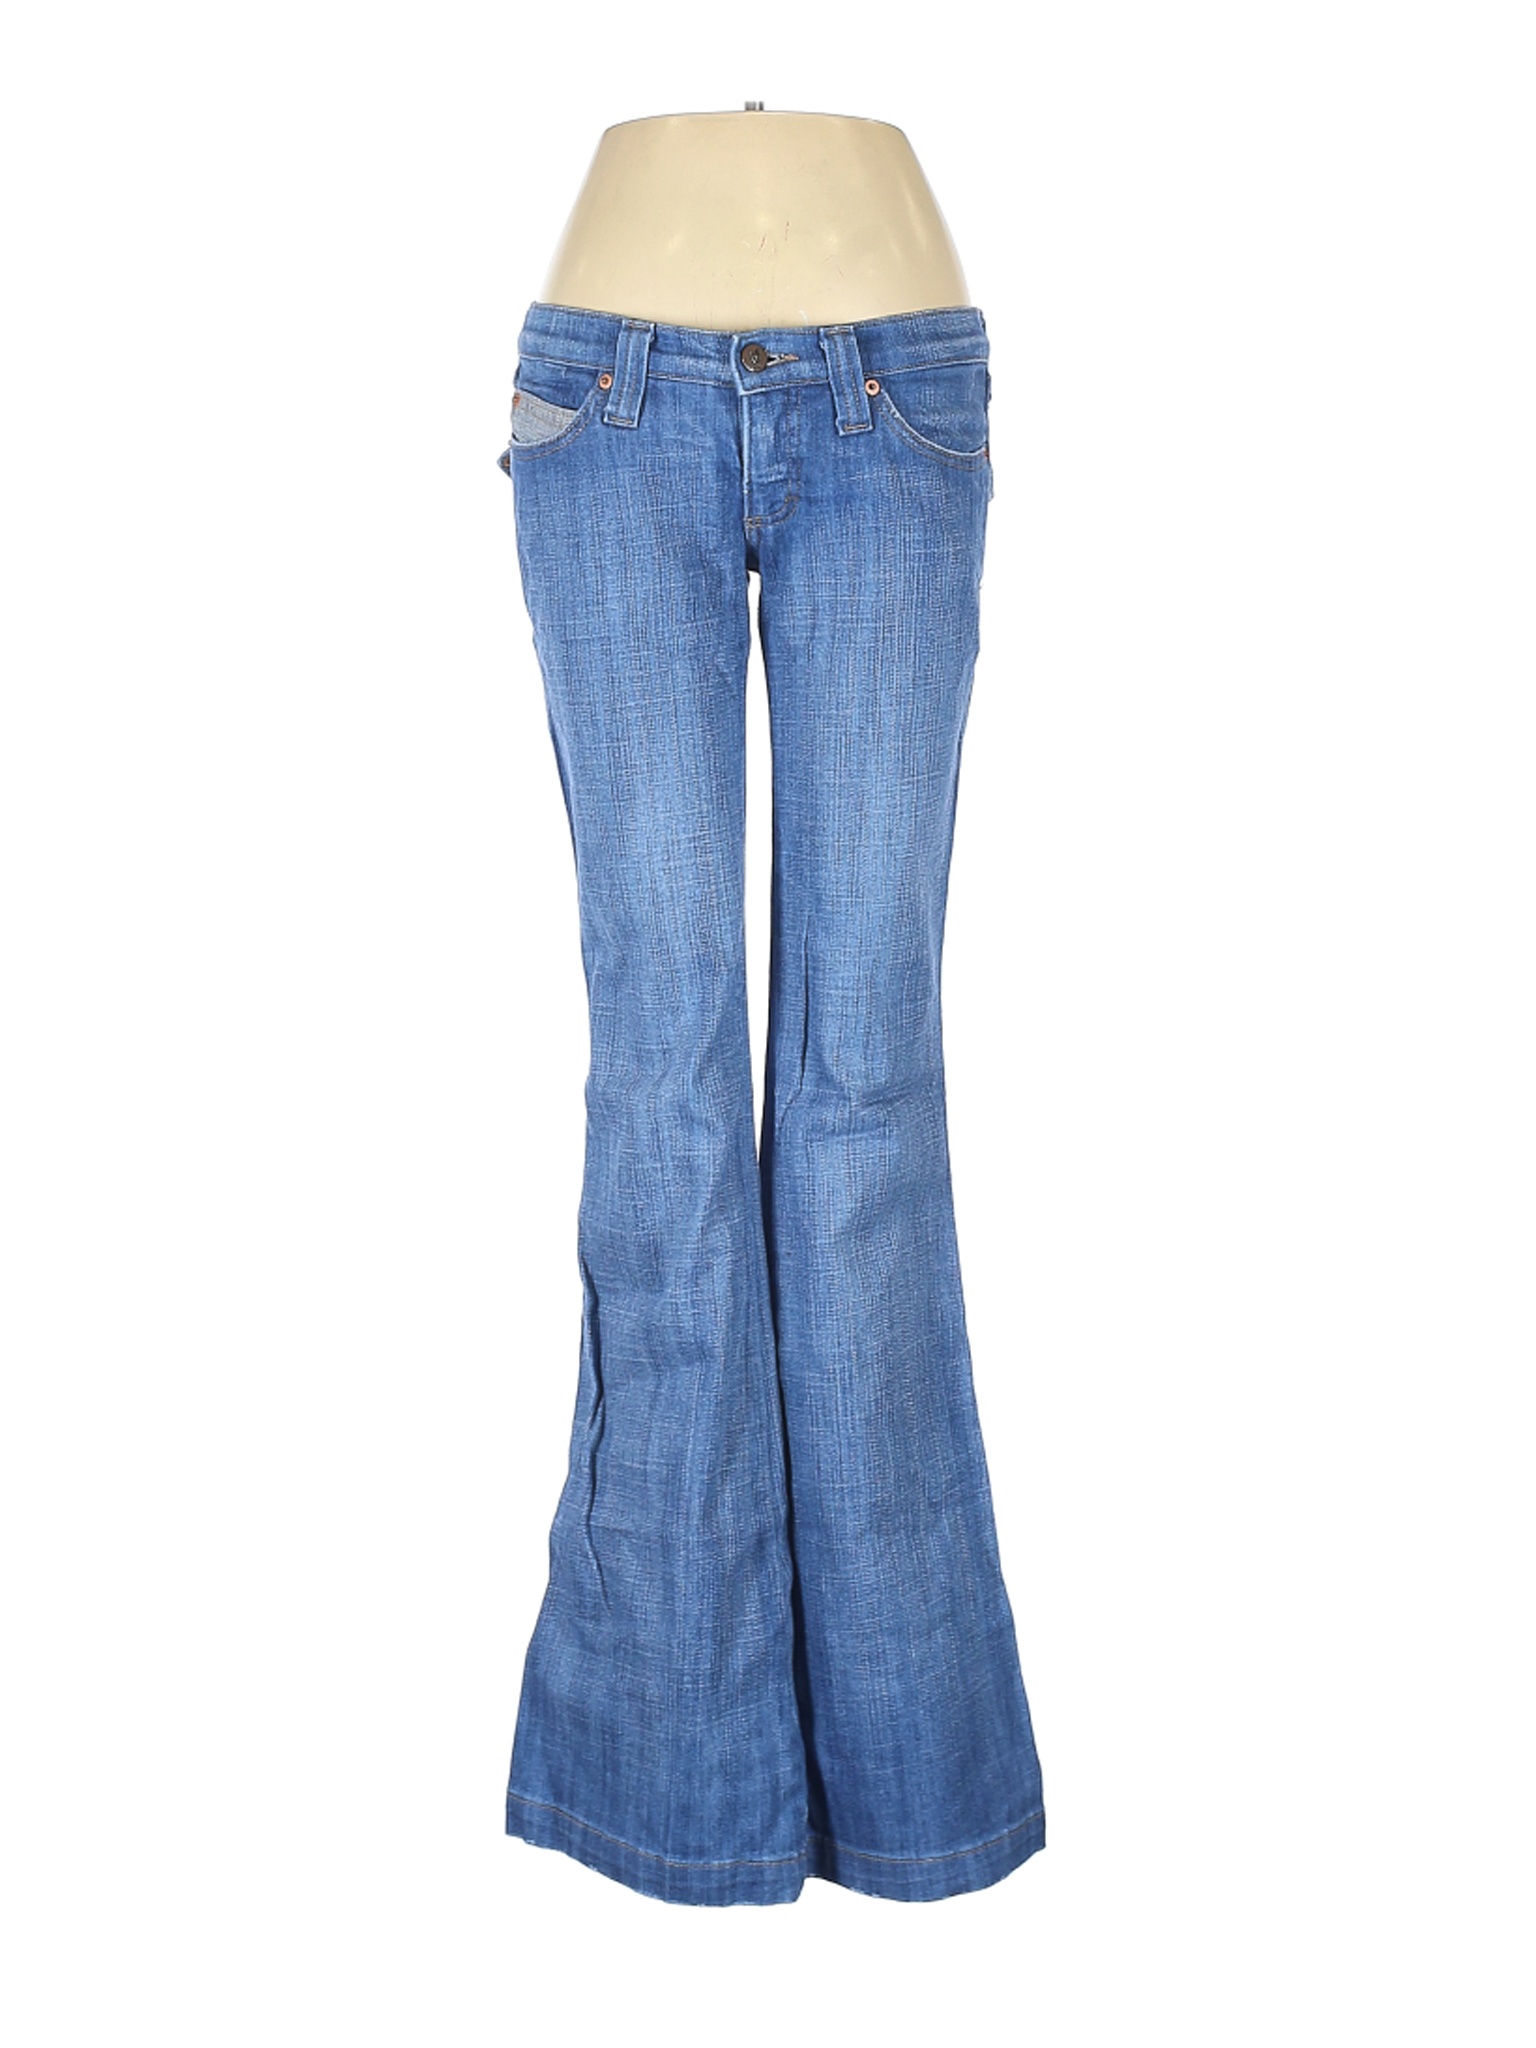 Frankie B. Women Blue Jeans 6 | eBay